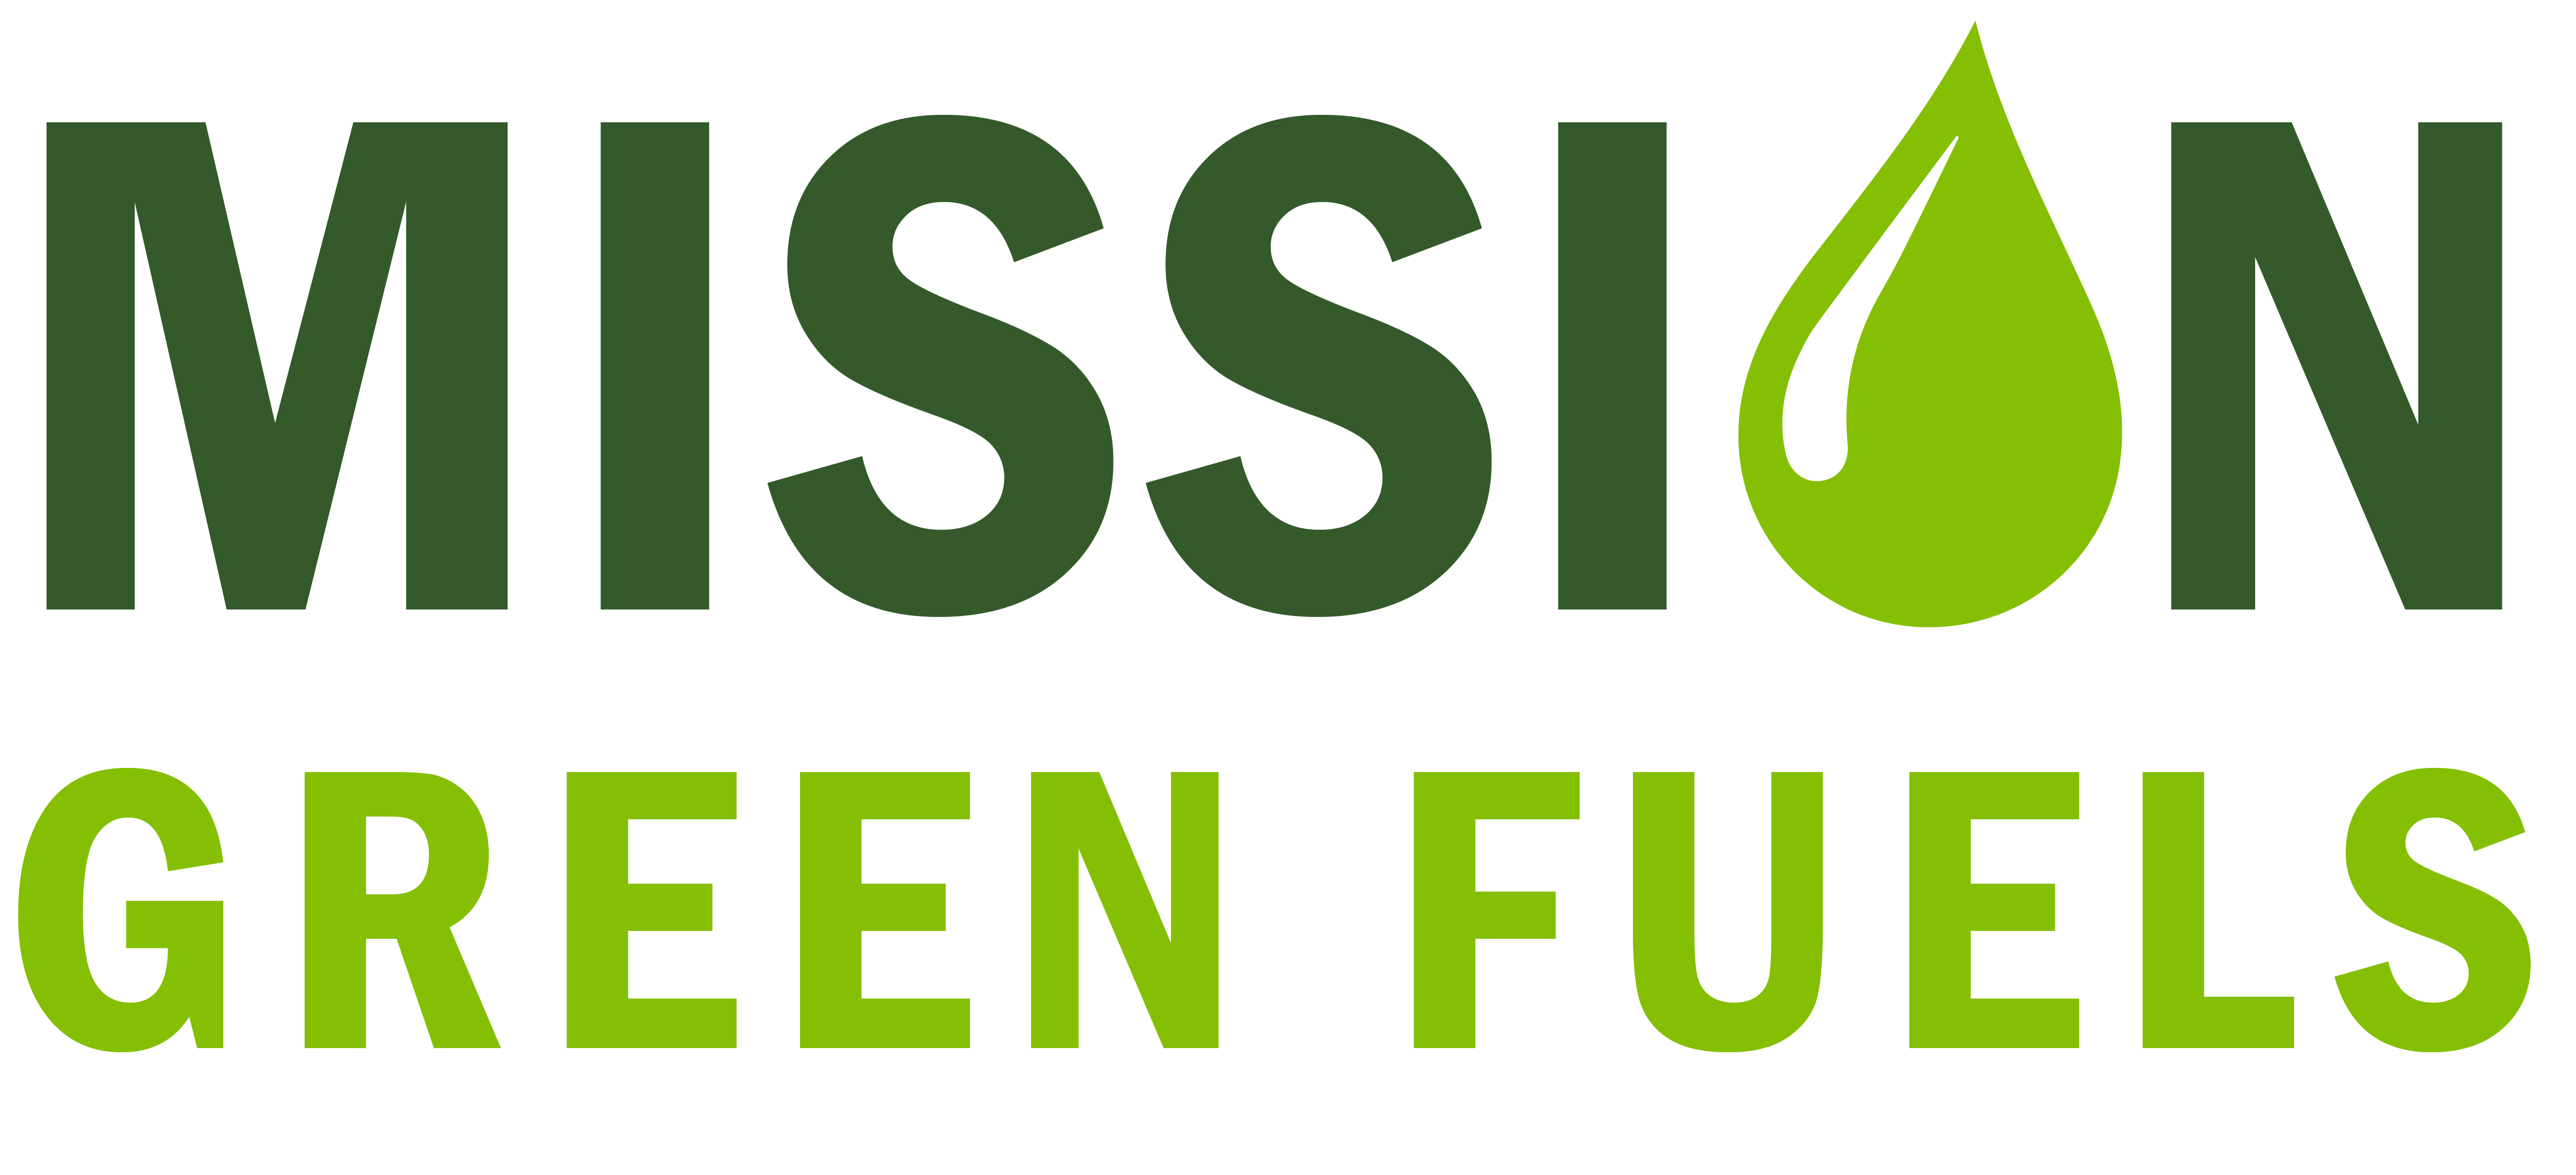 Missiongreenfuels Logo Trans